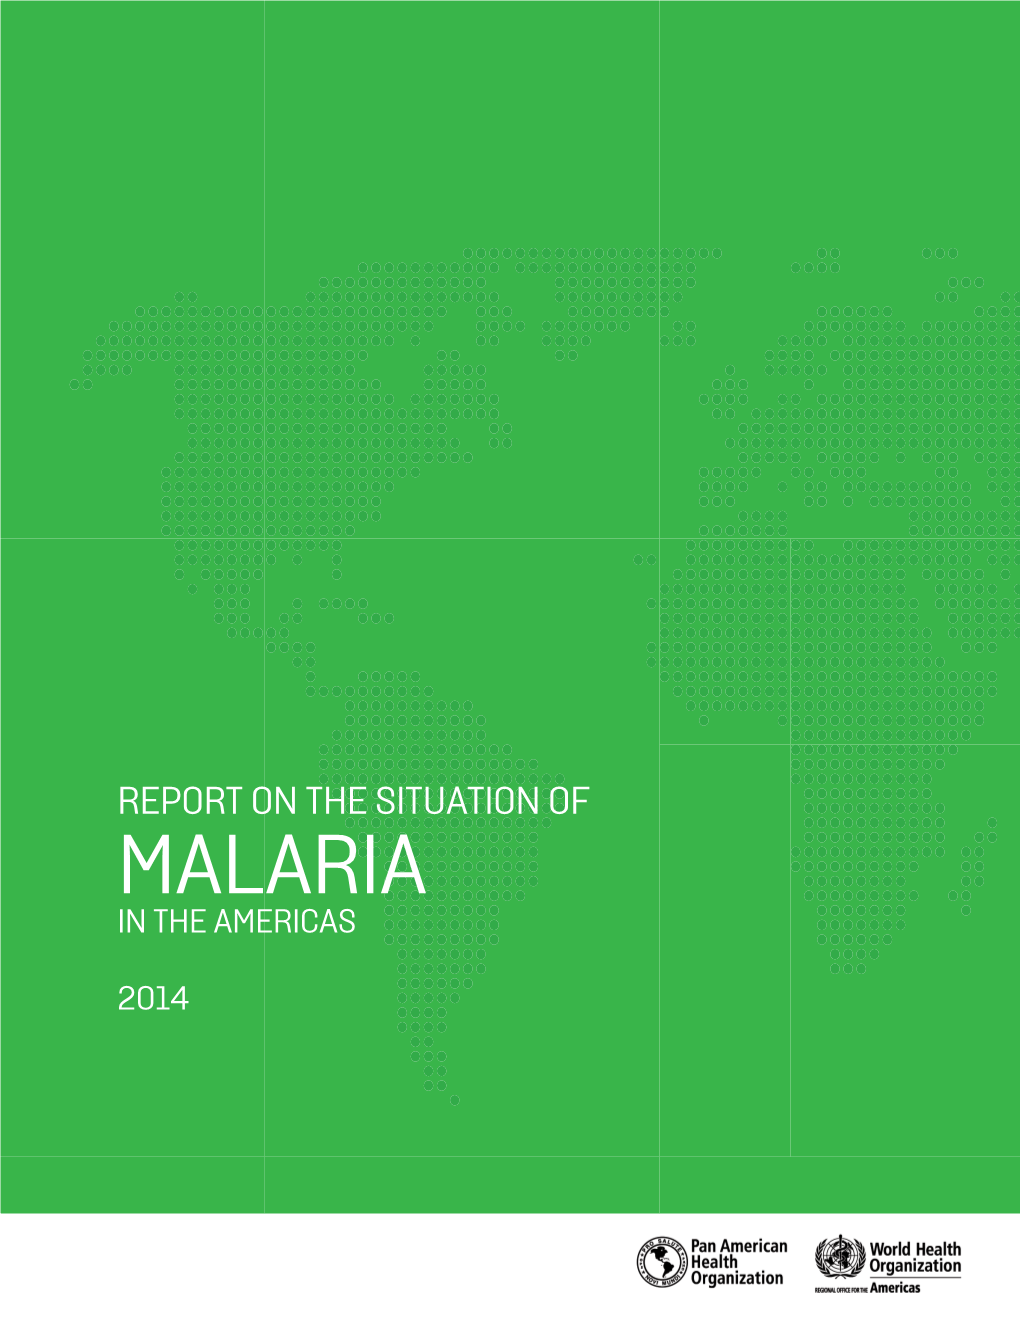 Malaria in the Americas